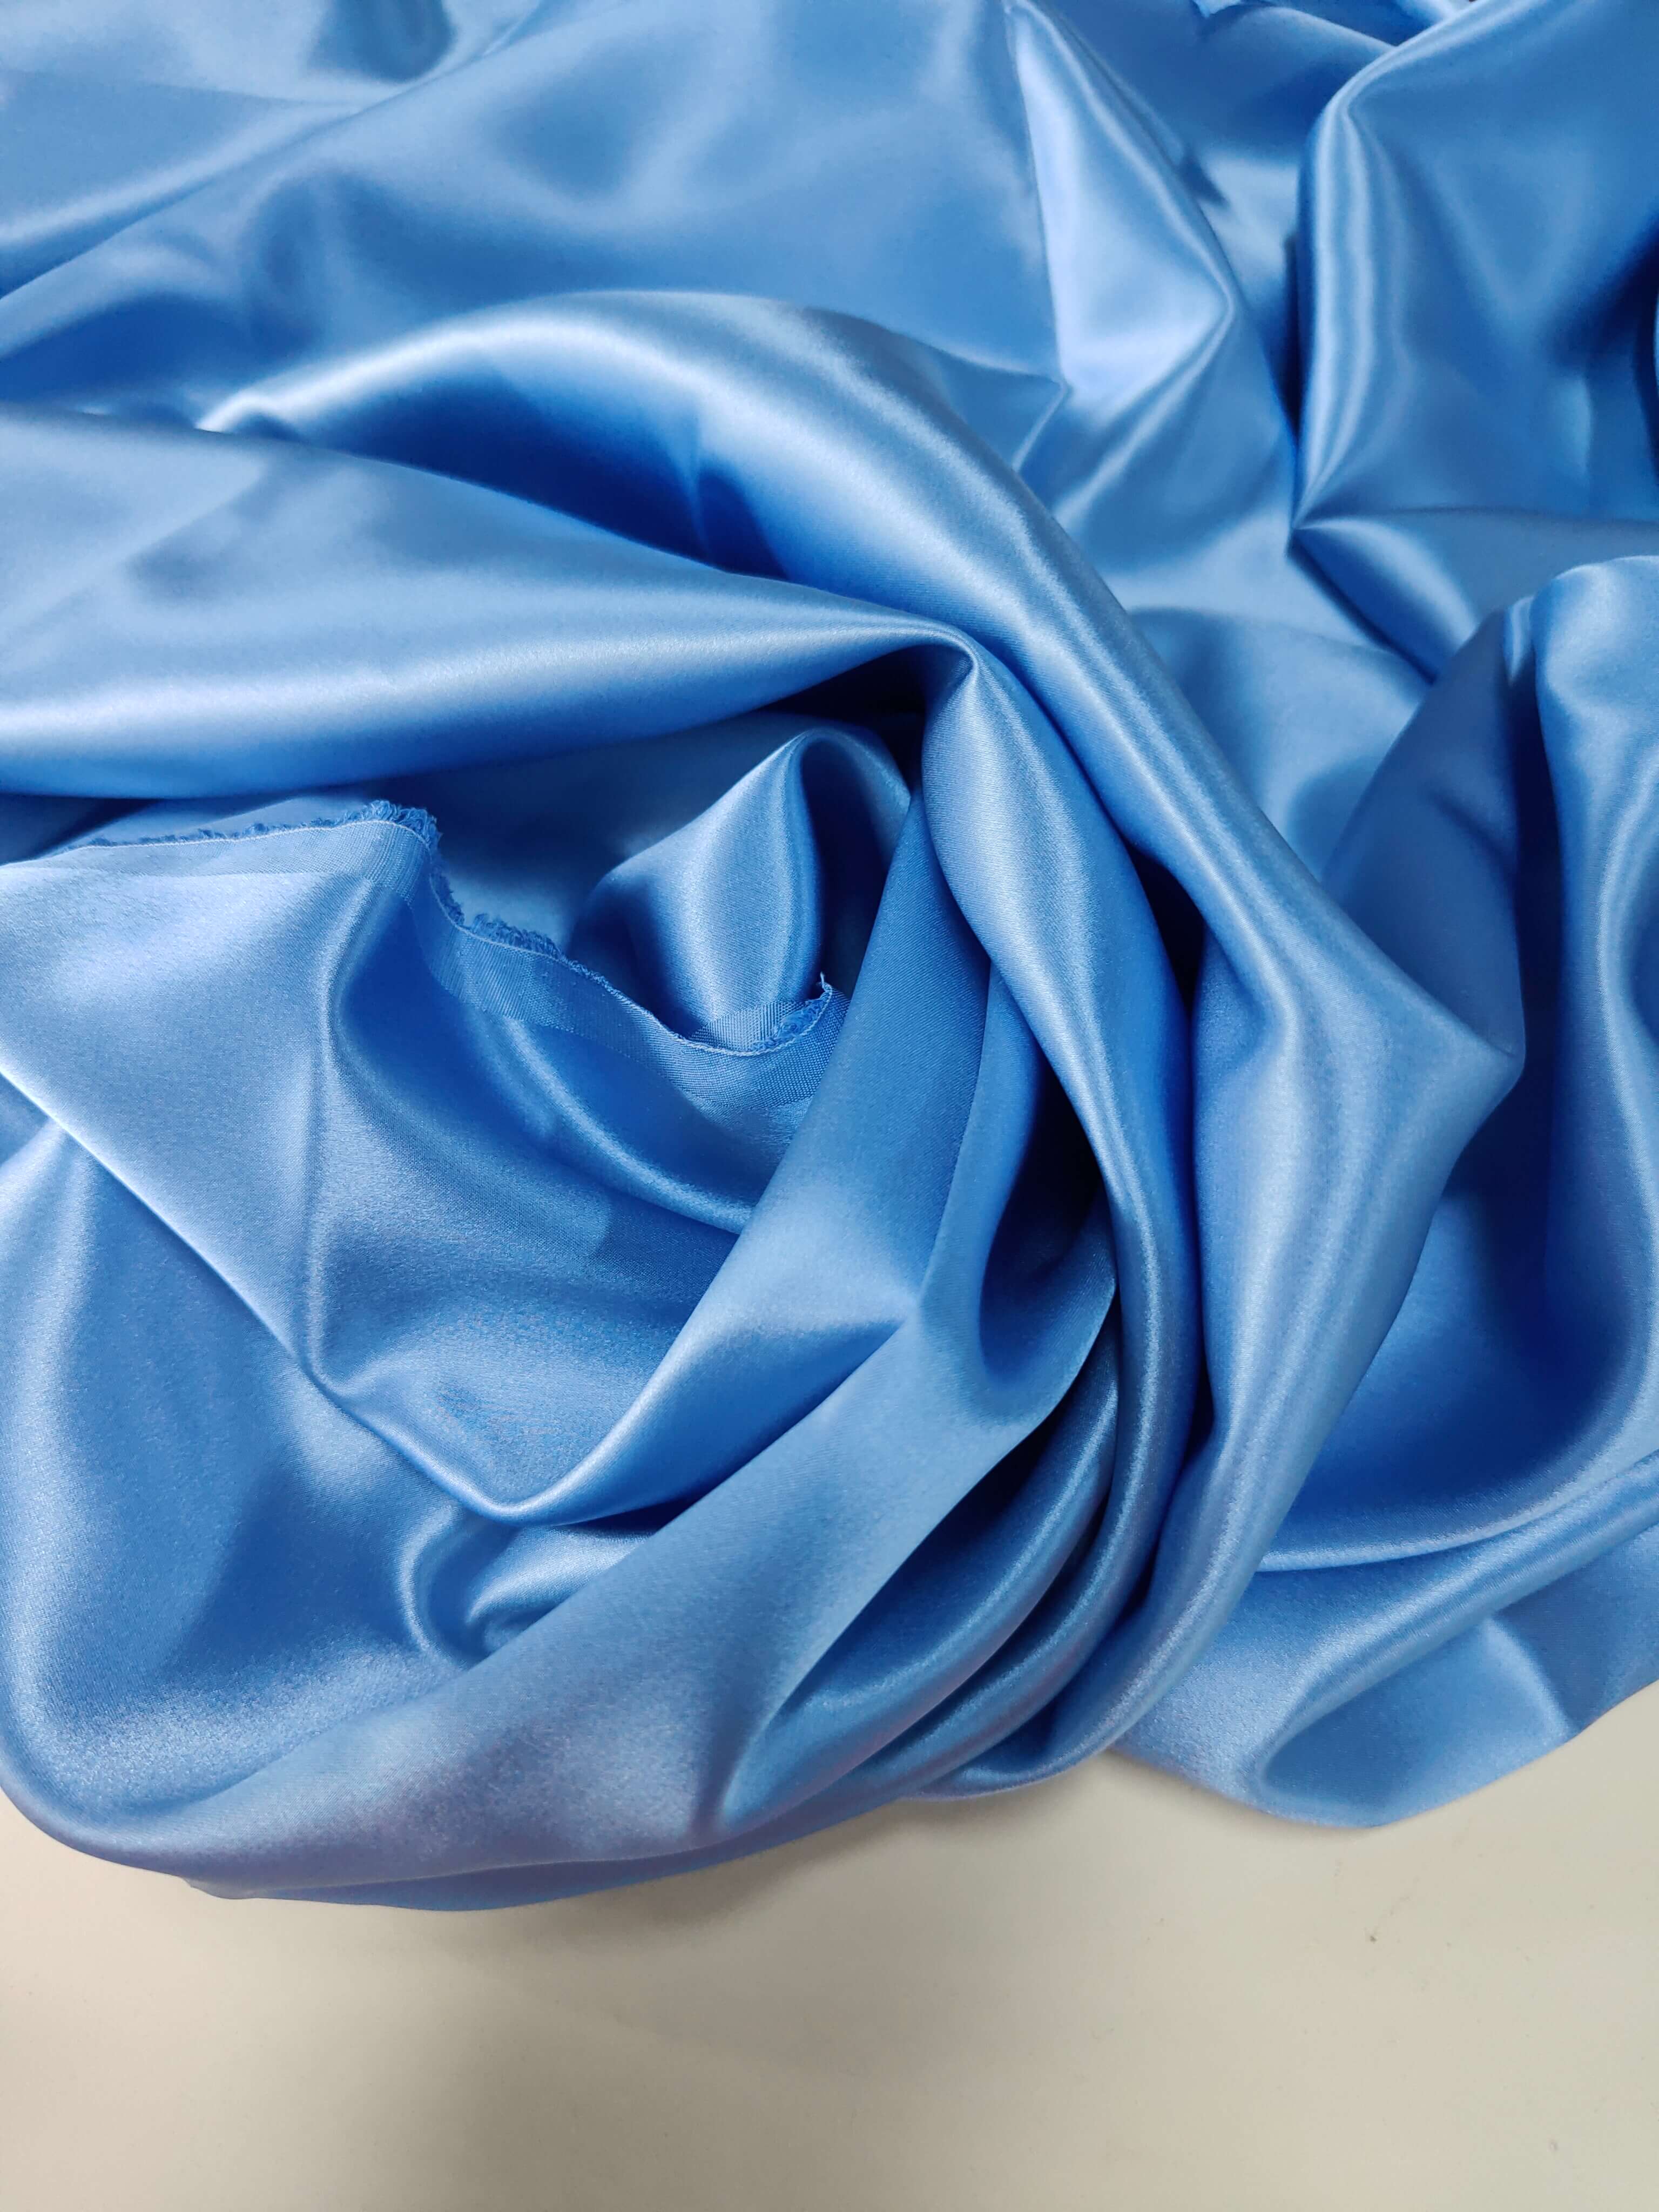 Designer Silk Fabric